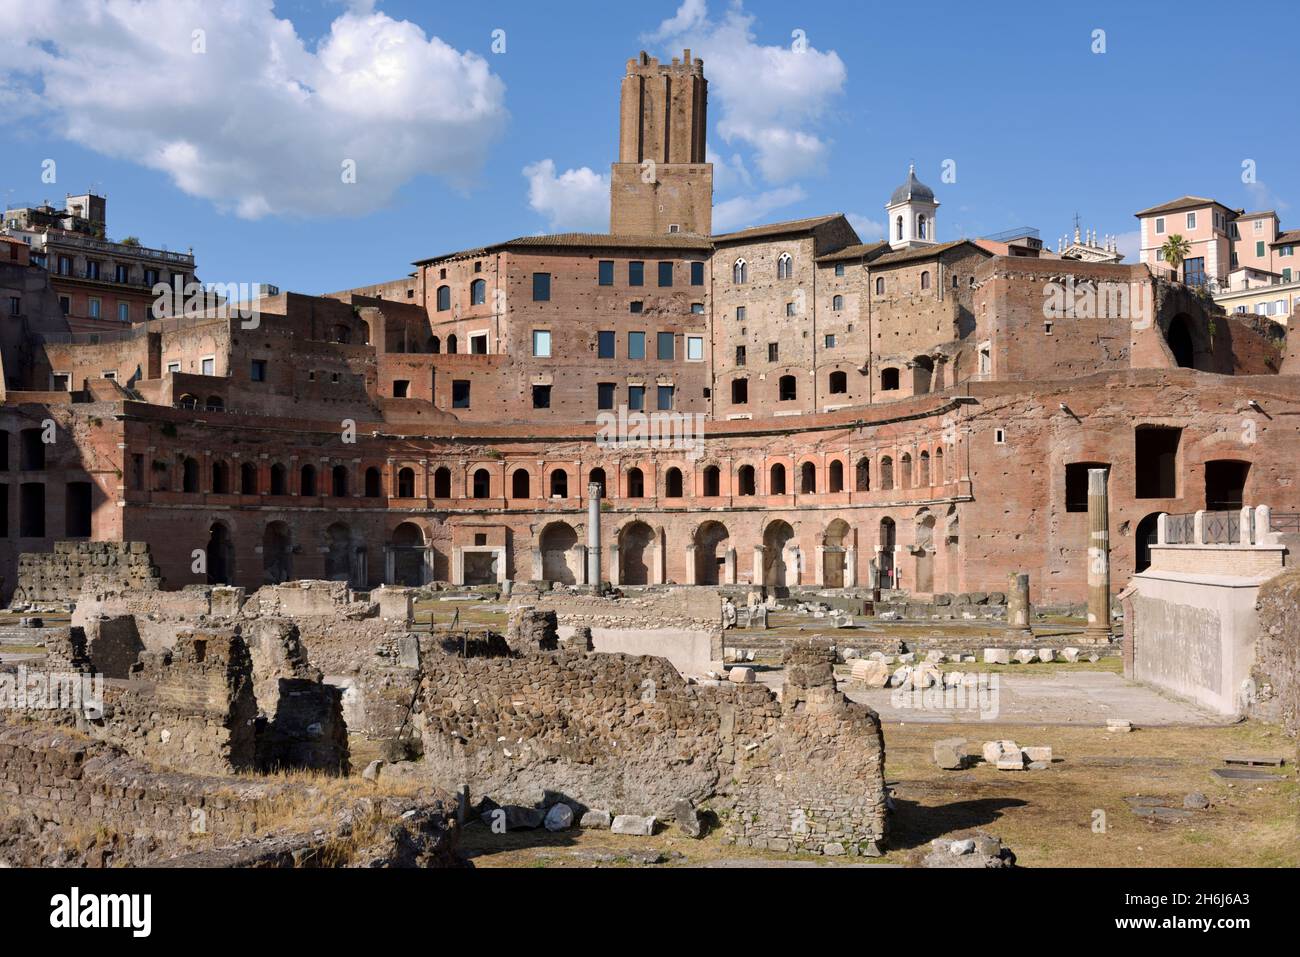 forum et marché de trajan, rome, italie Banque D'Images